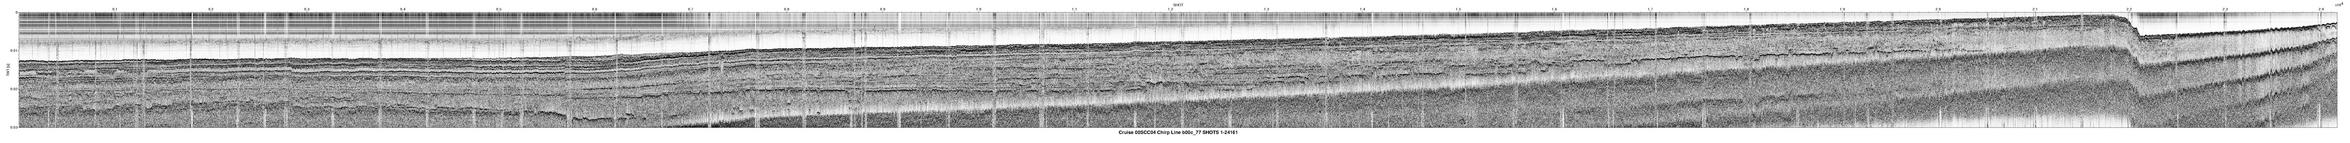 00SCC04 b00c_77 seismic profile image